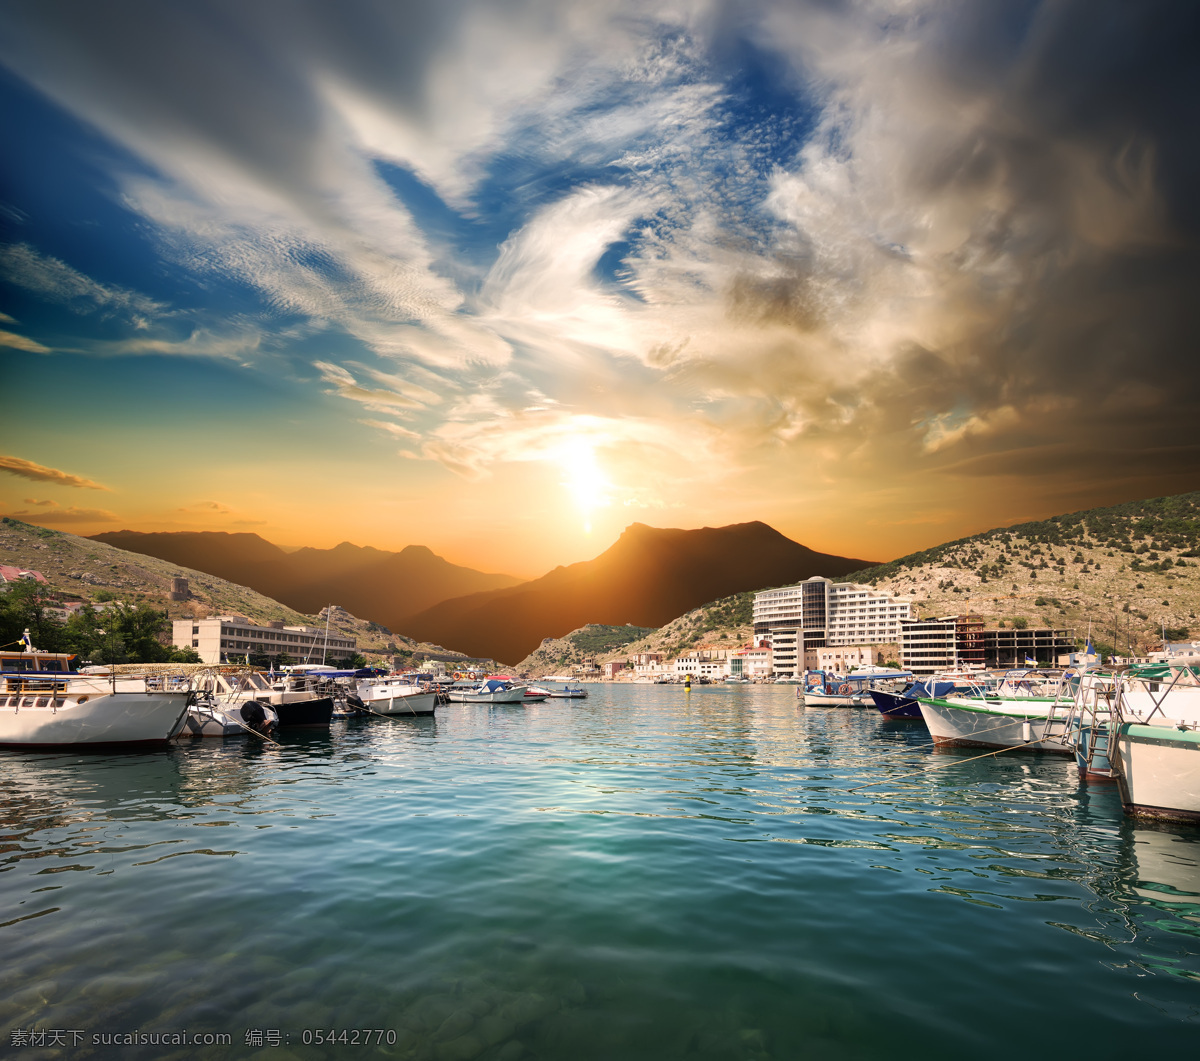 黄昏 下 海港 船只 美景 风景 自然 山水风景 风景图片